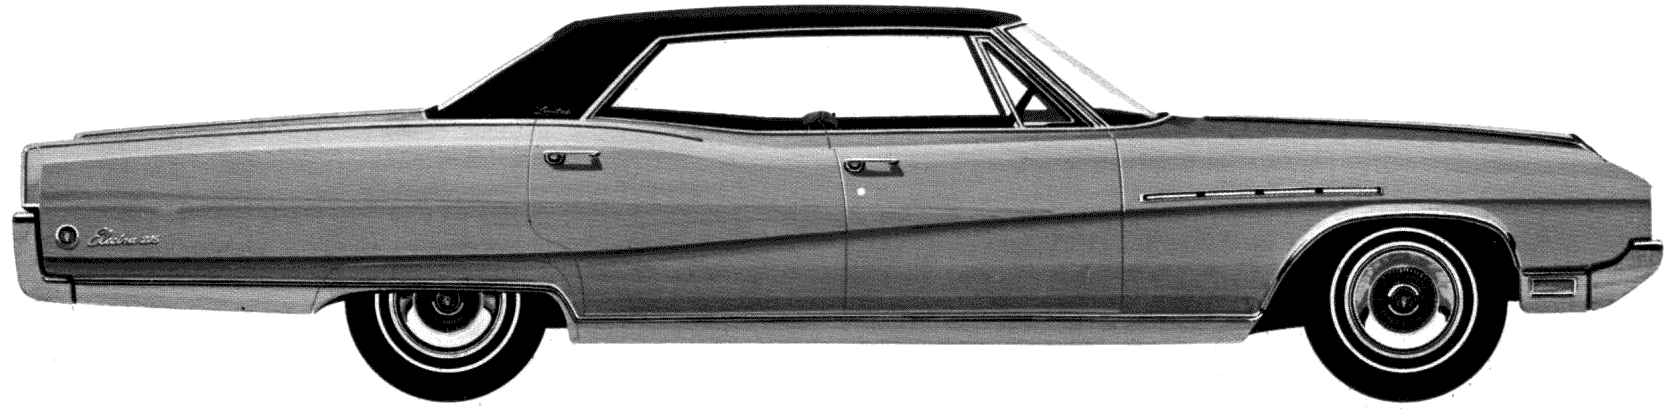 Automobilis Buick Electra 225 Limited 4-Door Hardtop 1968 